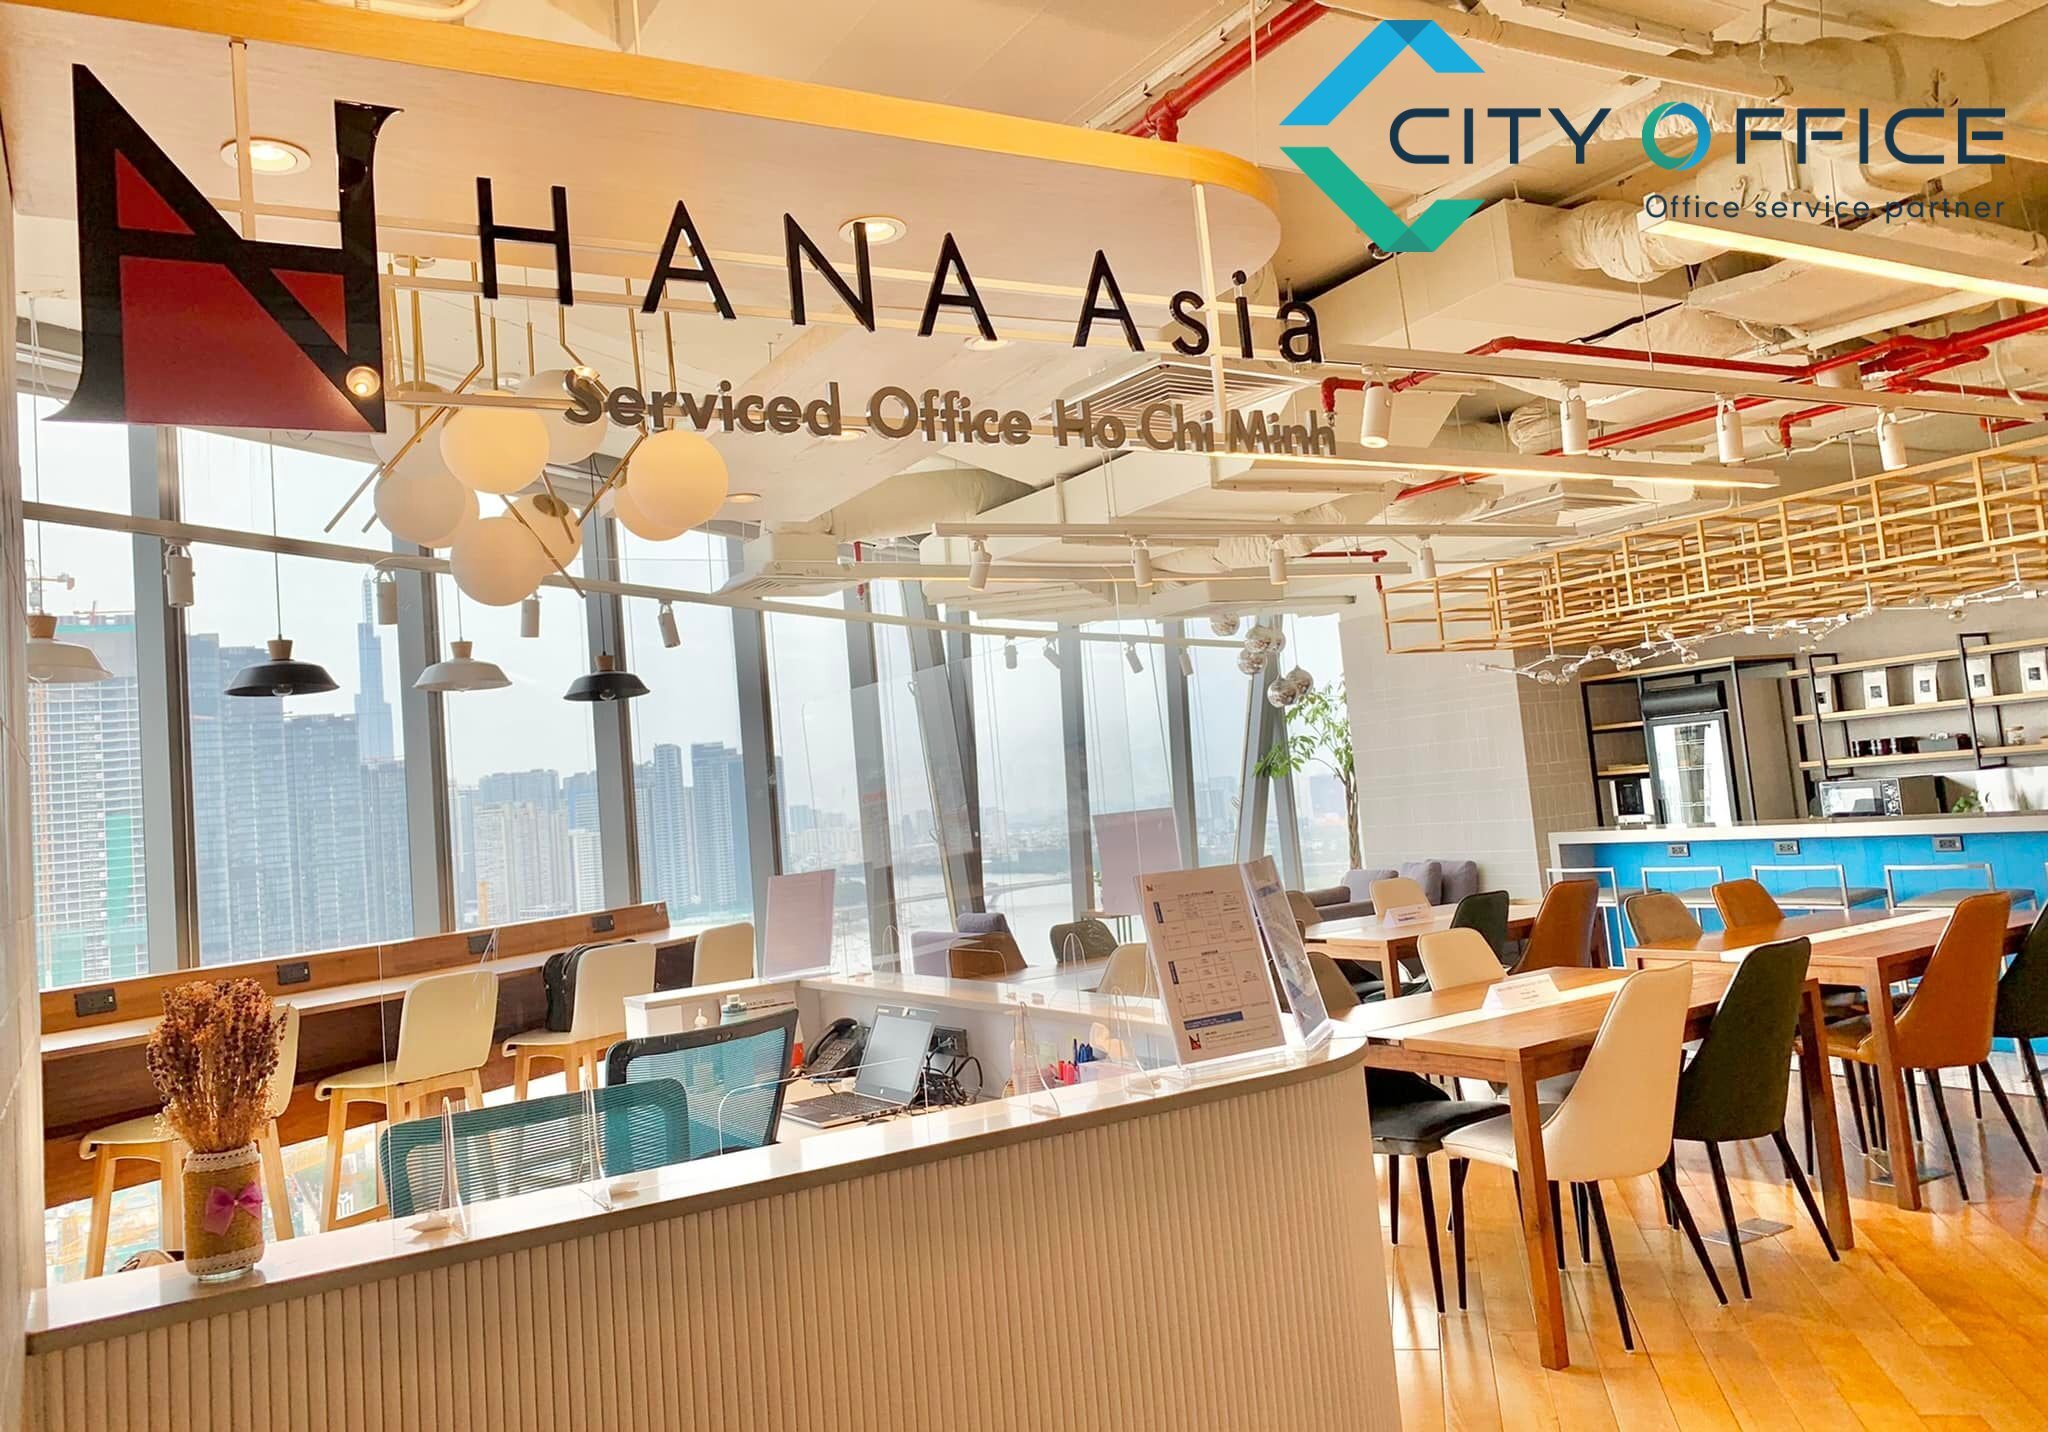 Cho thuê văn phòng tòa nhà Văn phòng trọn gói quận 1 tòa nhà Lim Tower 1 –  HANA Asia